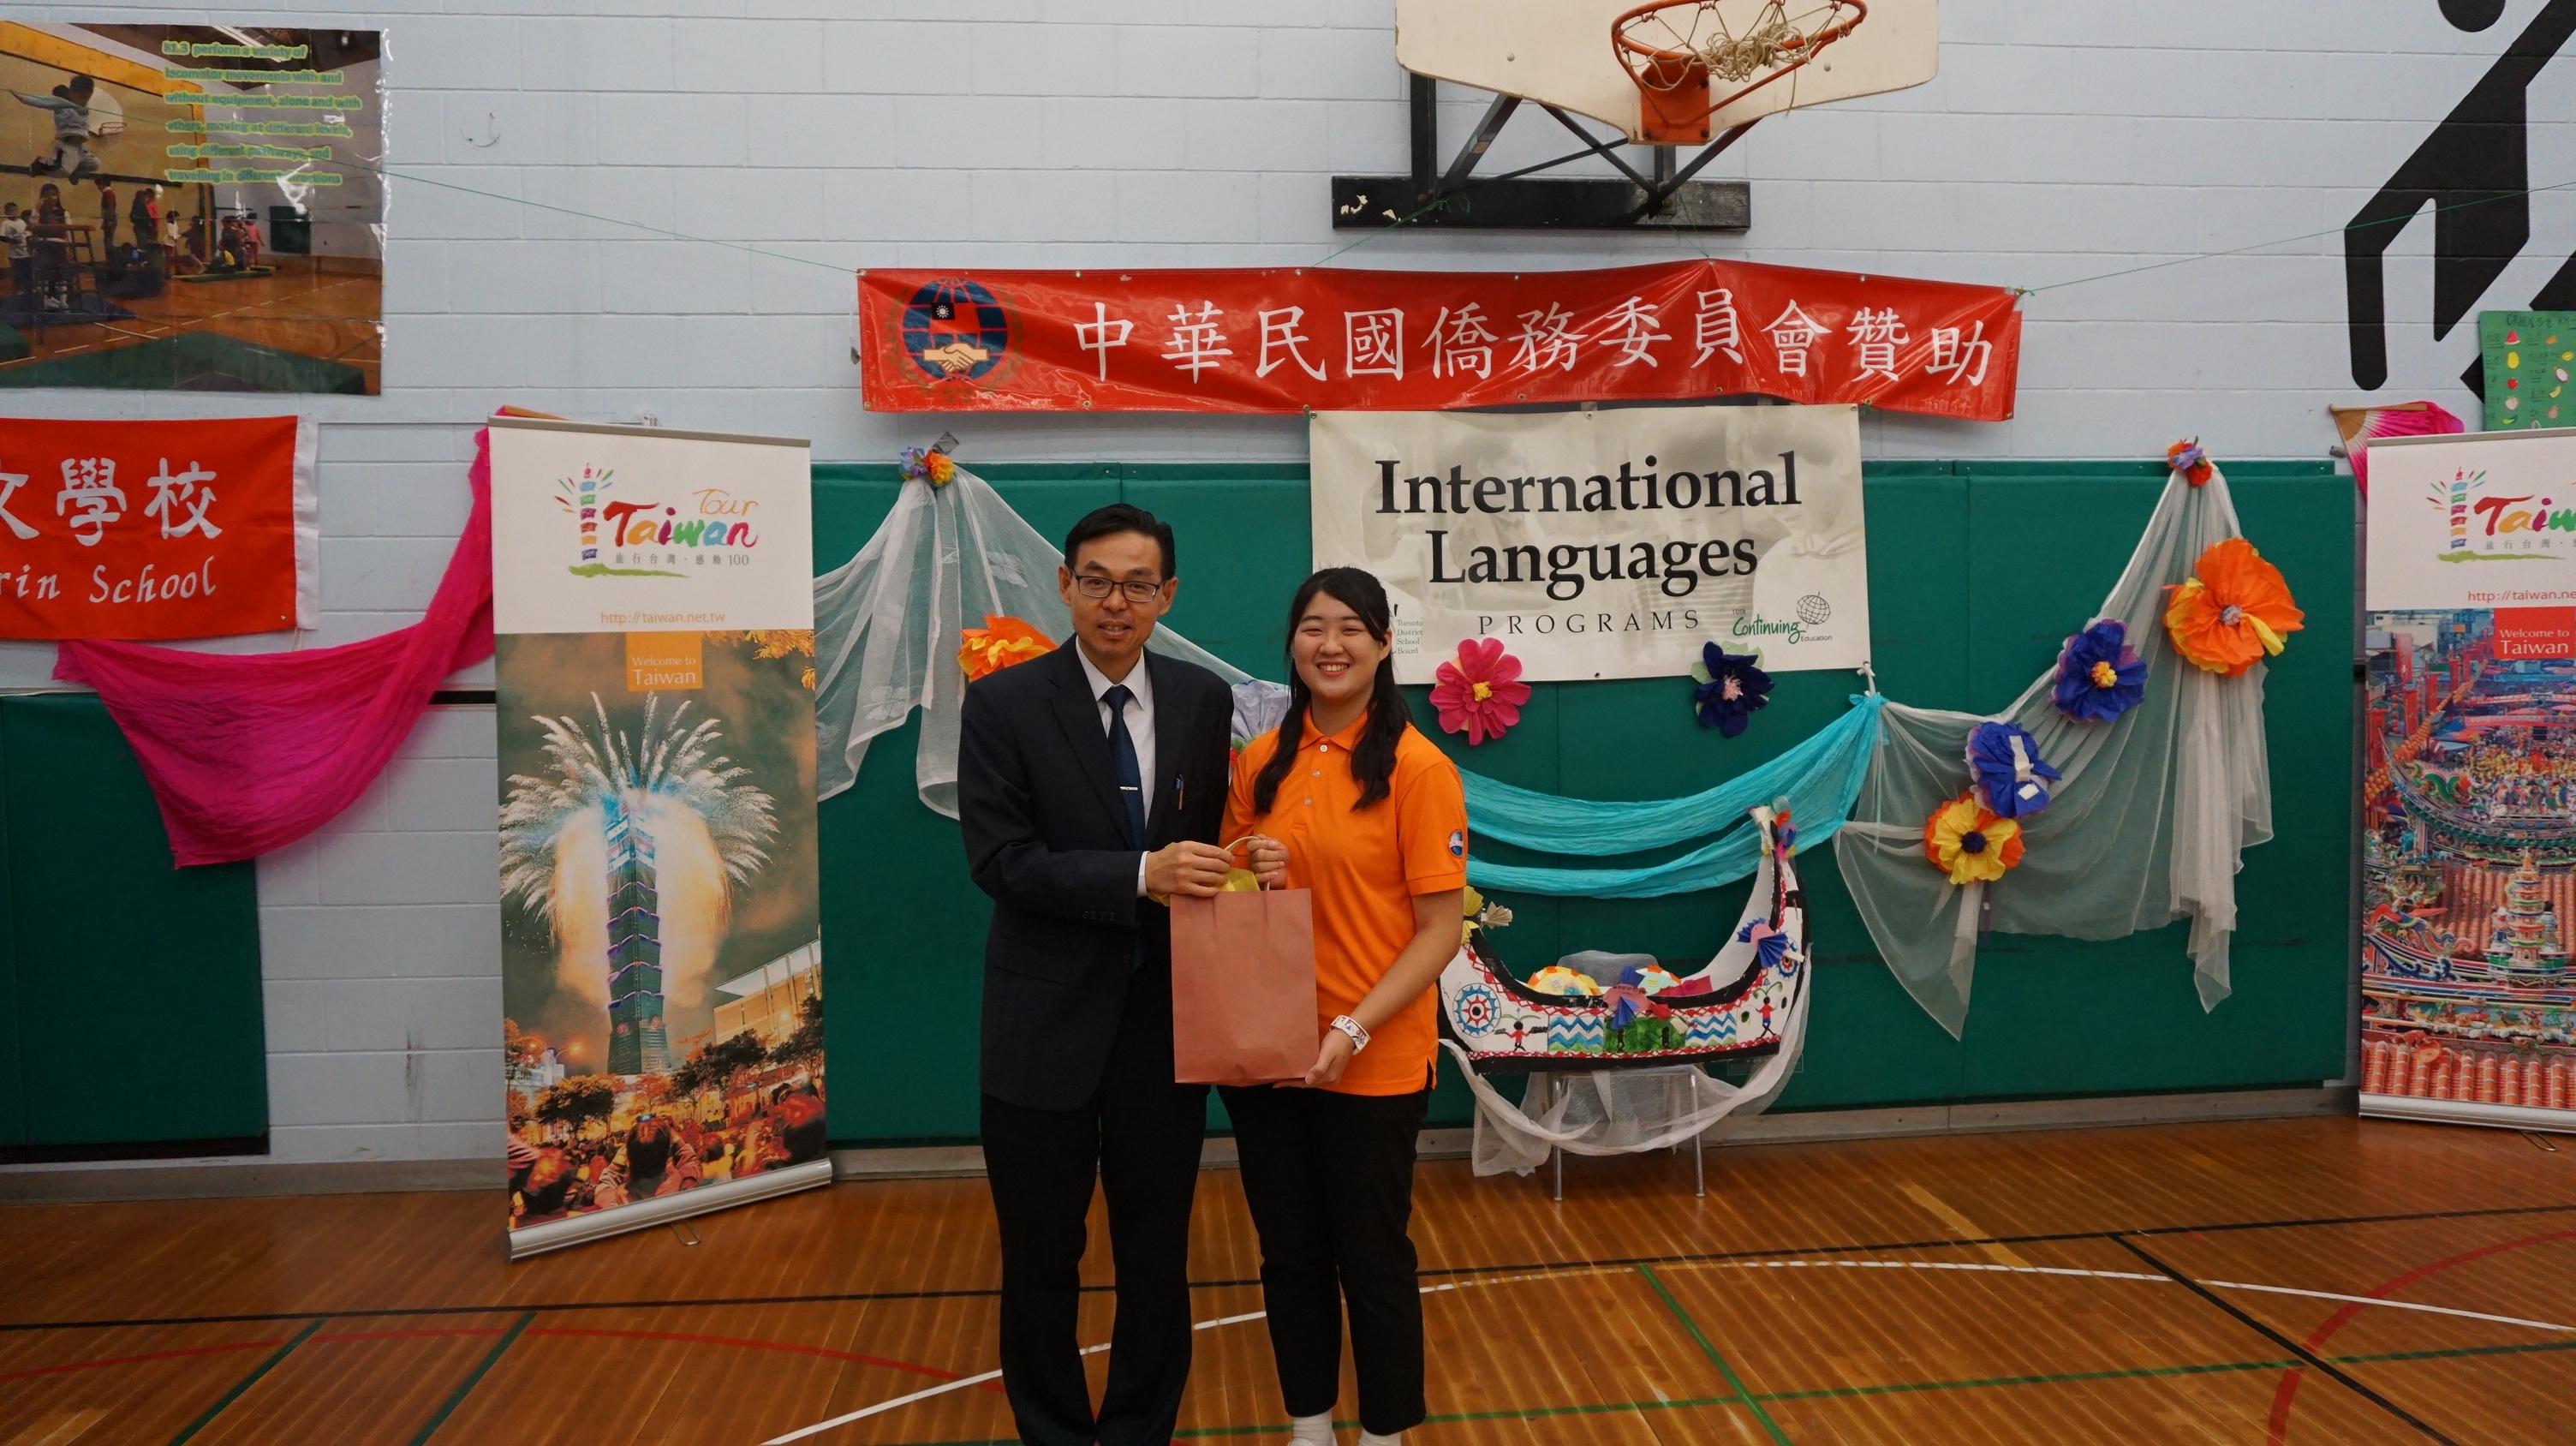 文教中心孫國祥主任致贈海華文教基金會暑期華語教學4位志工代表禮物。